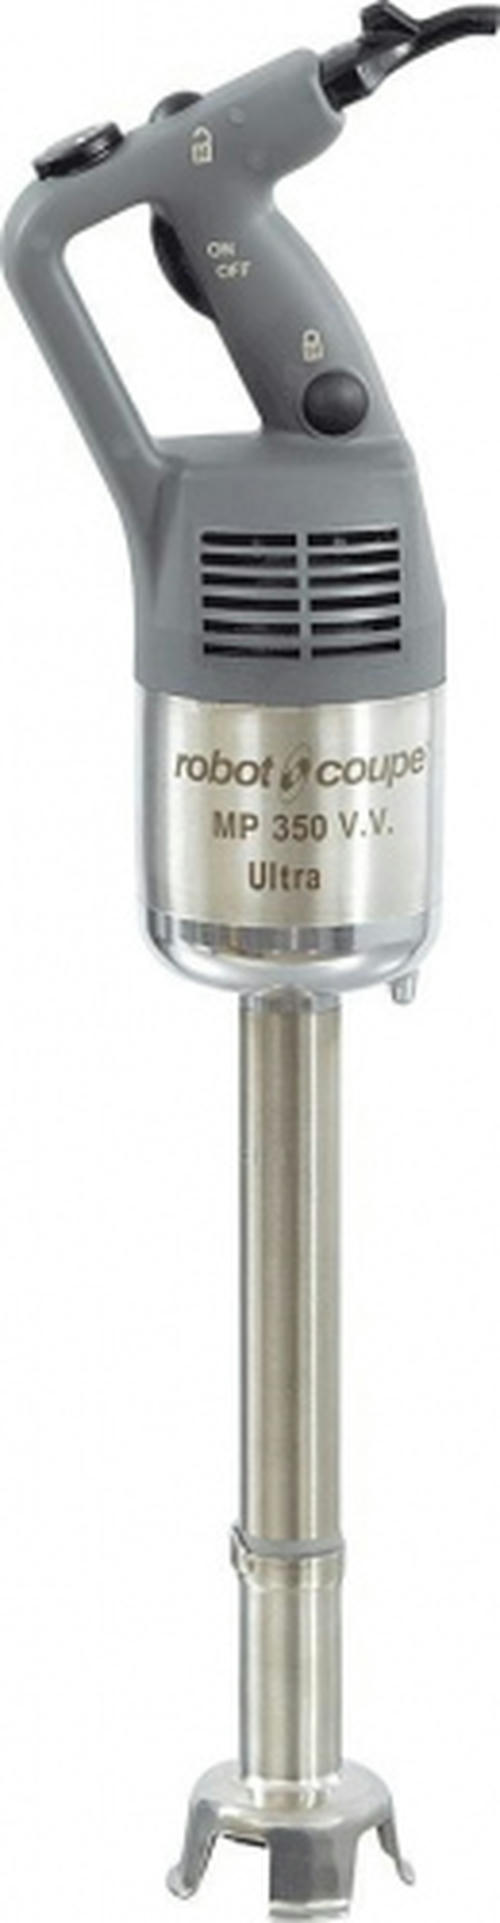 МИКСЕР ROBOT COUPE MP 350 V.V. ULTRA [31624849]